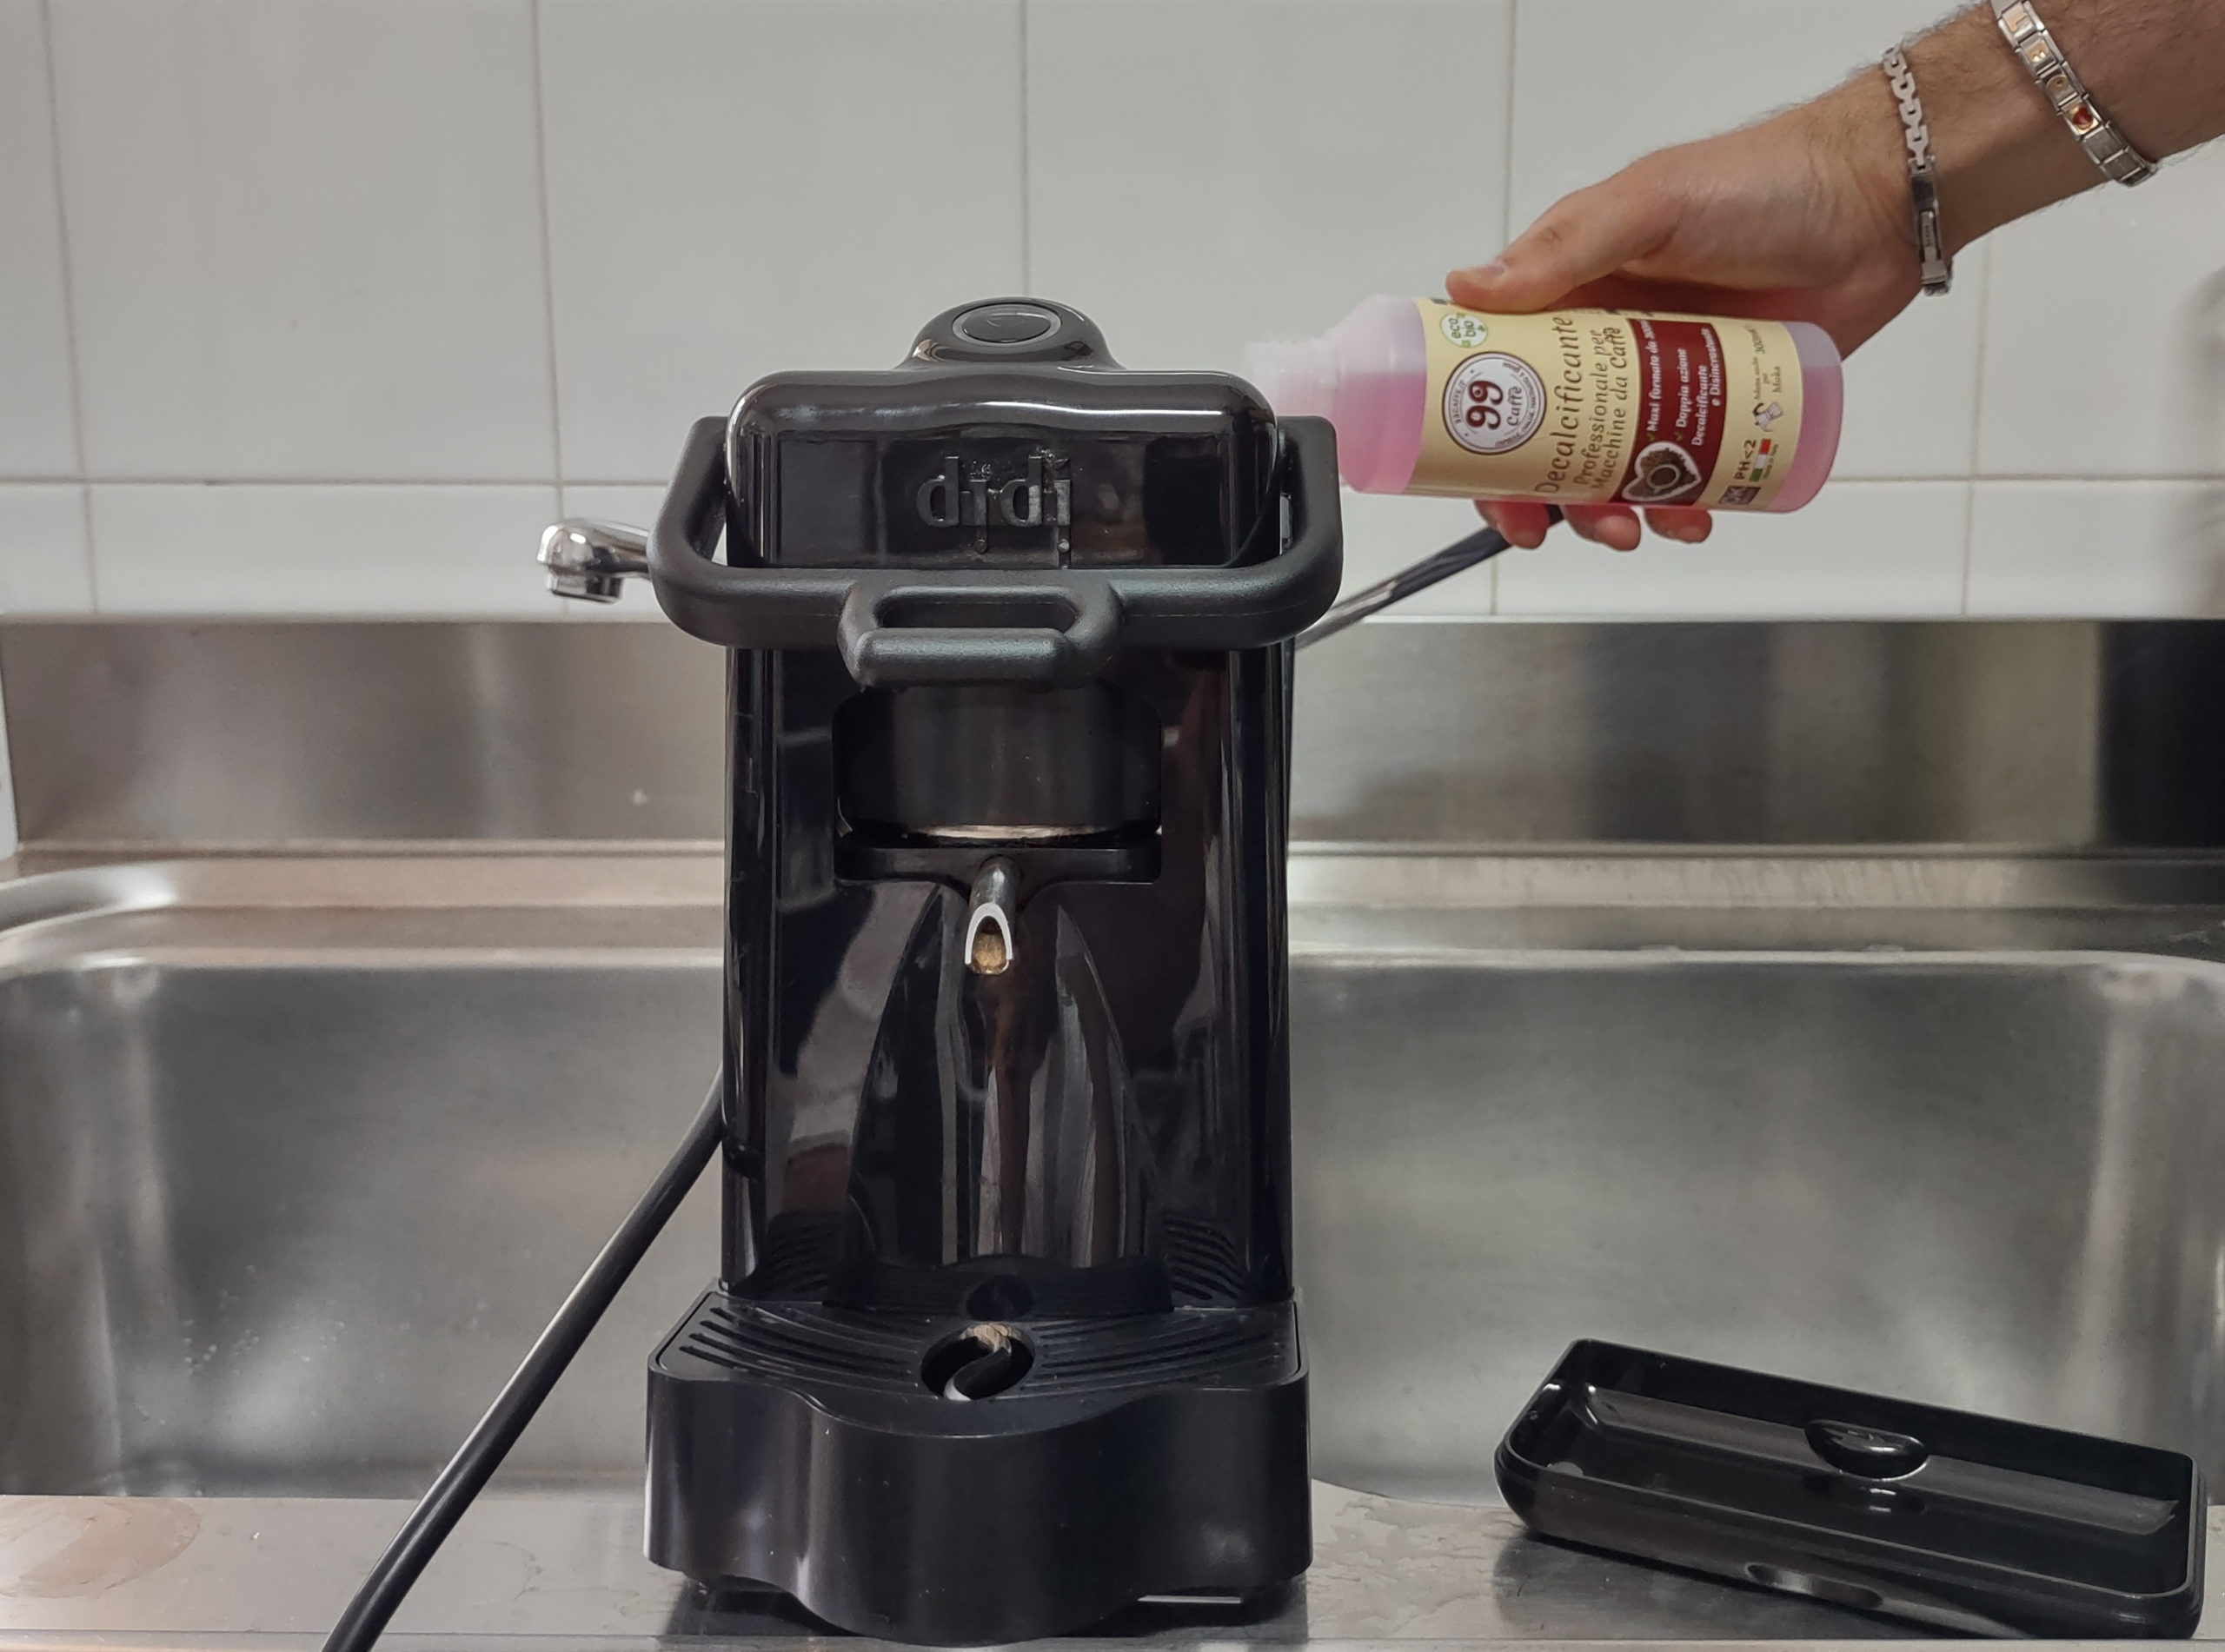 Decalcificazione , come pulire la macchina del caffè dal calcare?